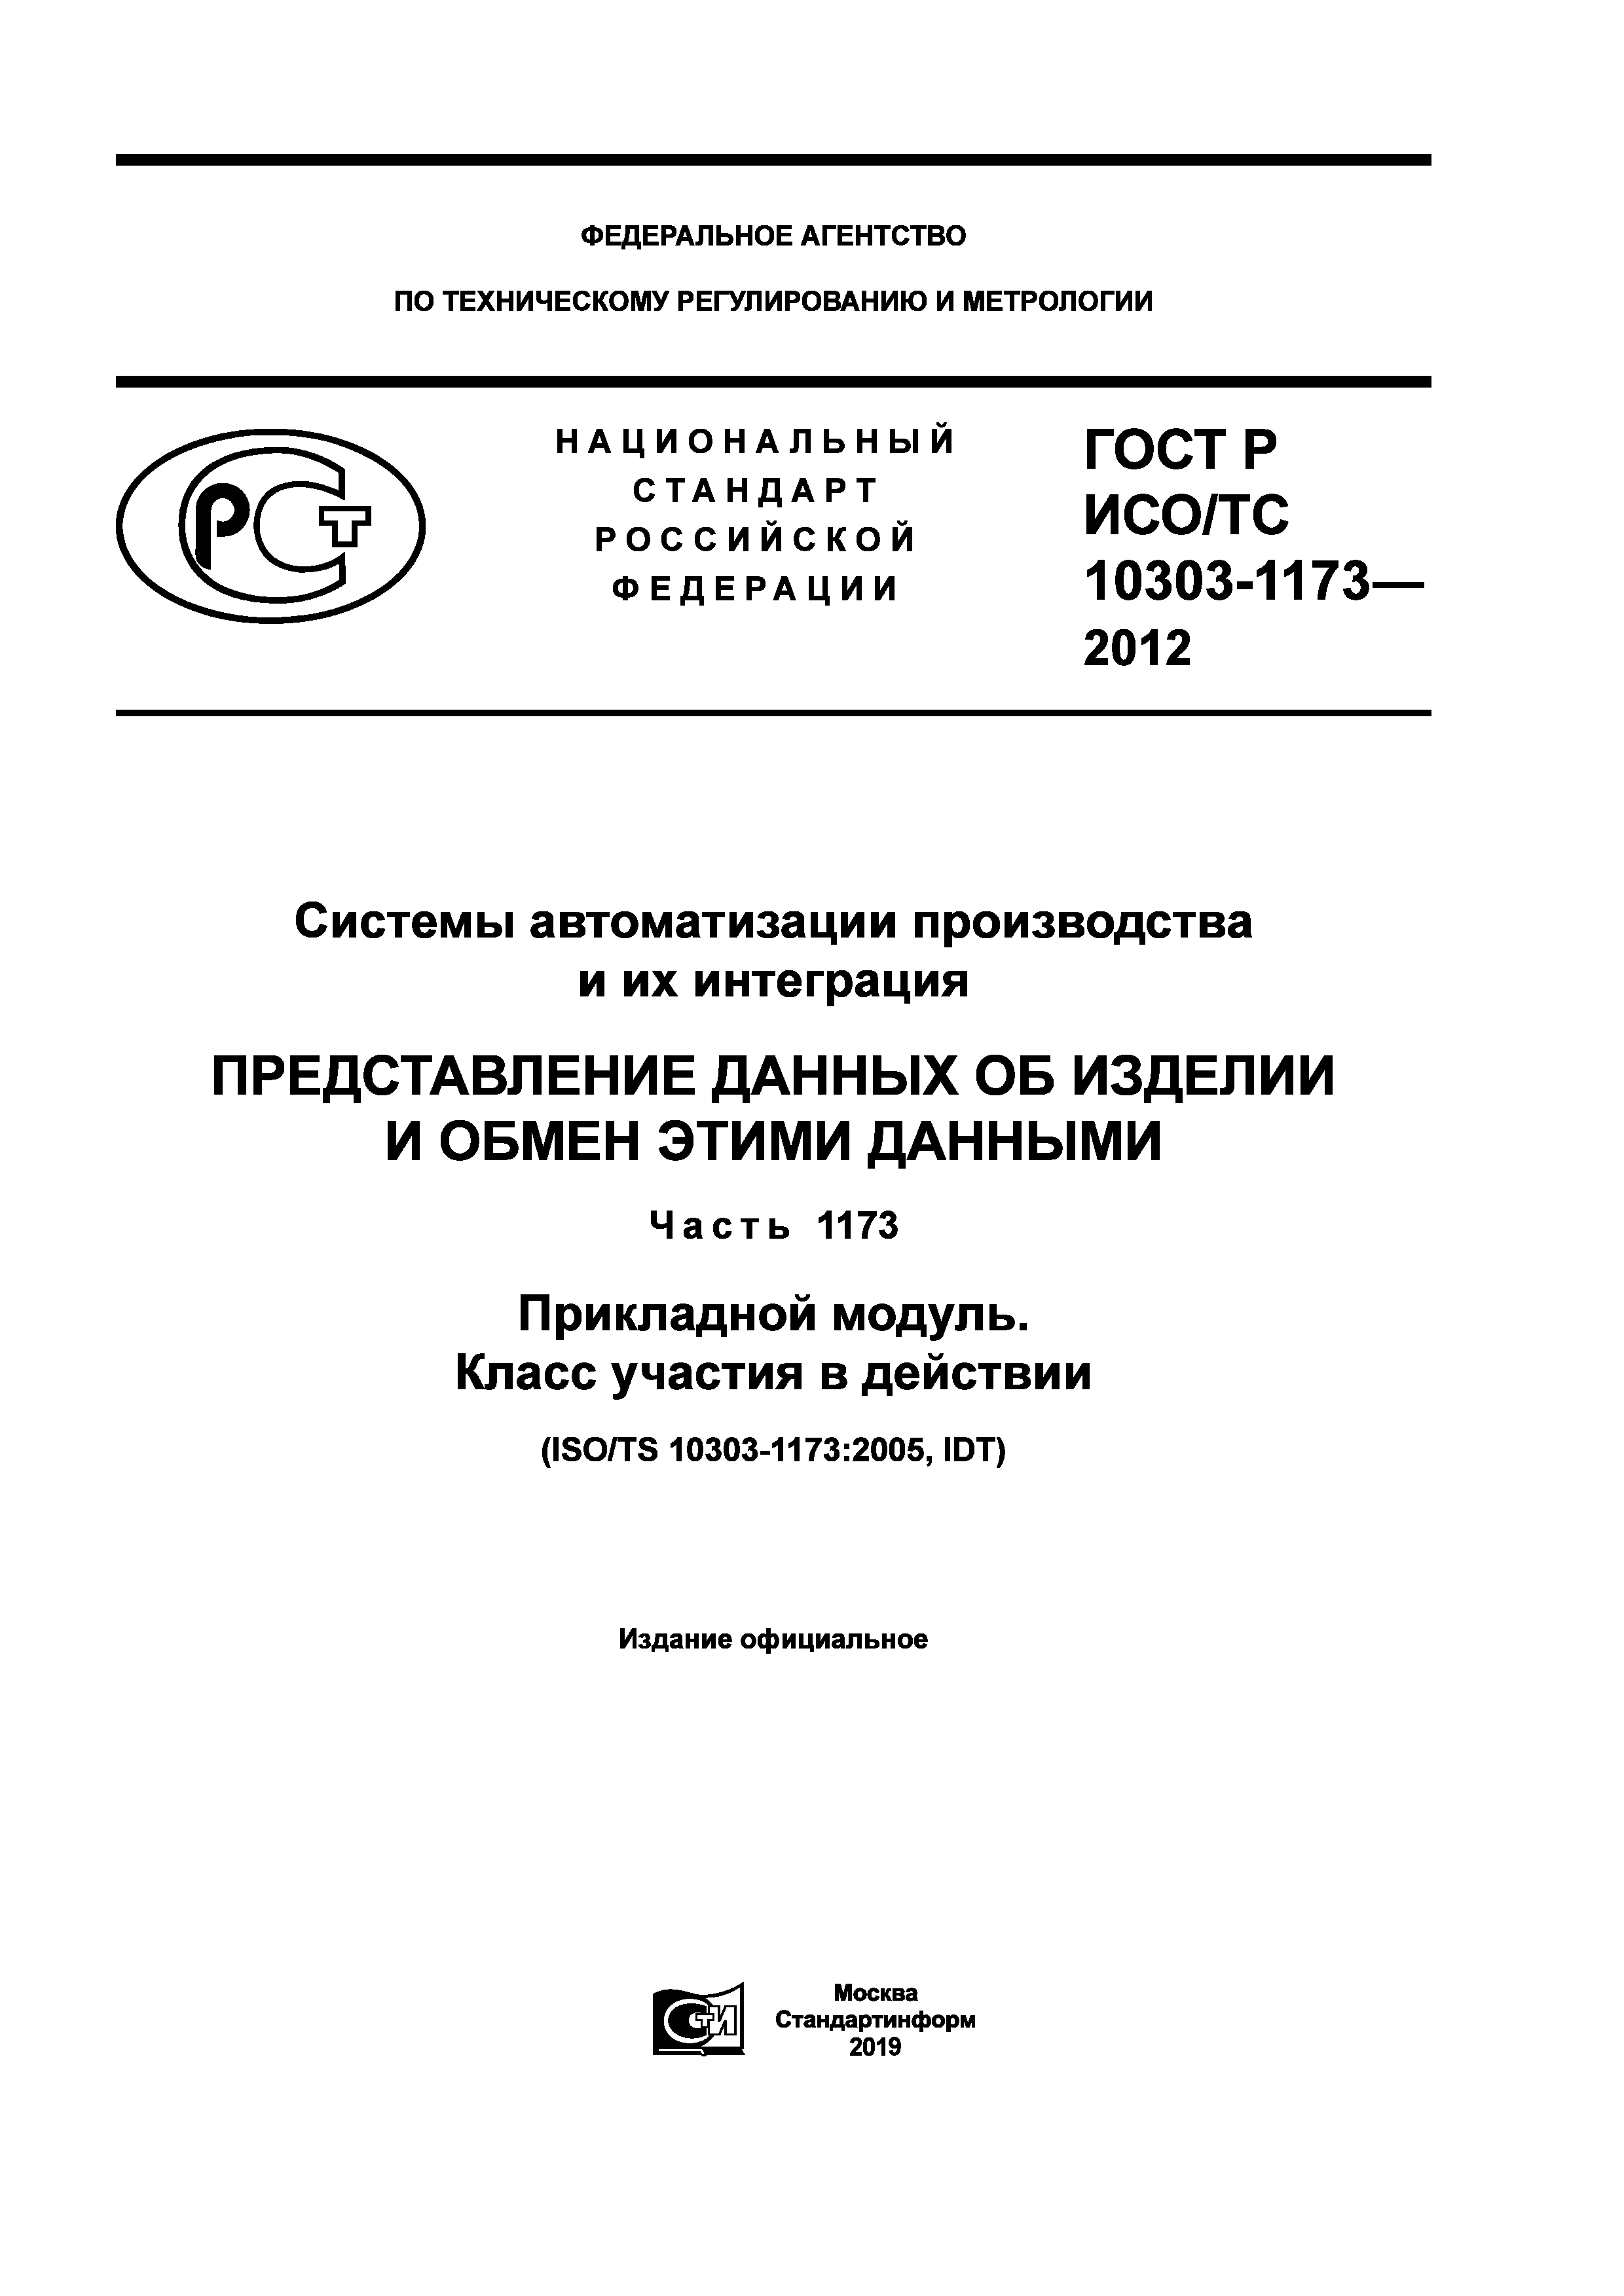 ГОСТ Р ИСО/ТС 10303-1173-2012